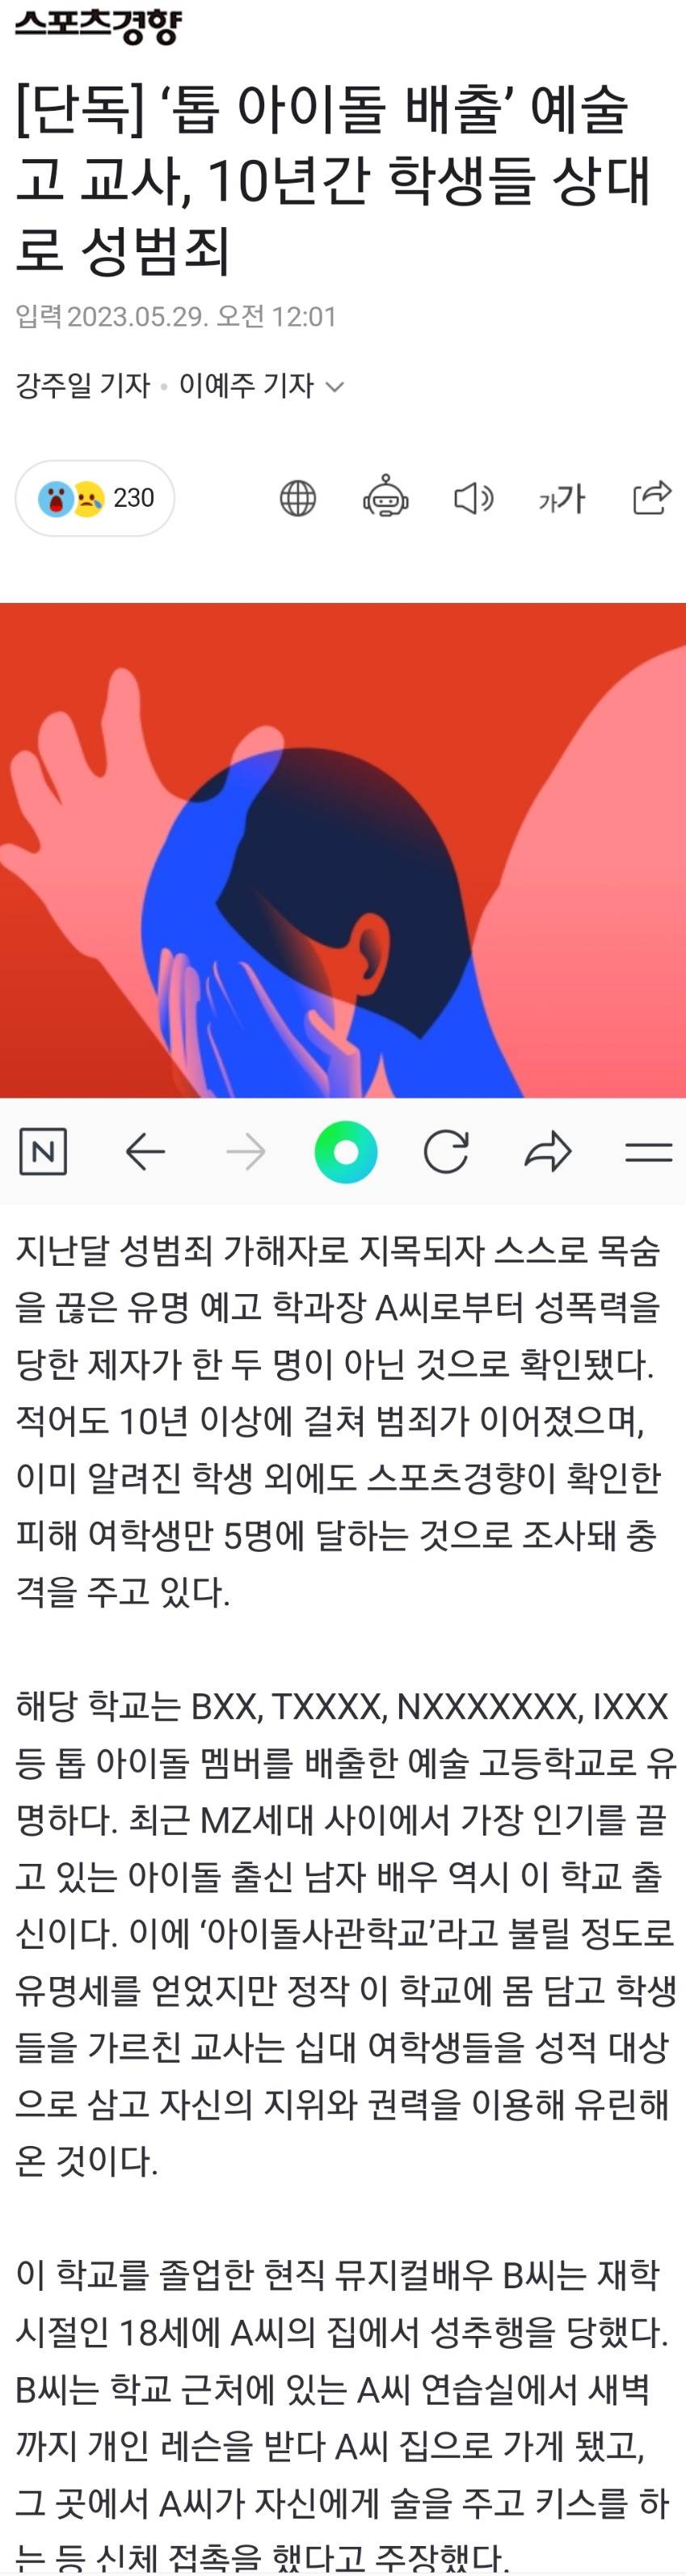 톱 아이돌 배출 예술고 교사의 성범죄